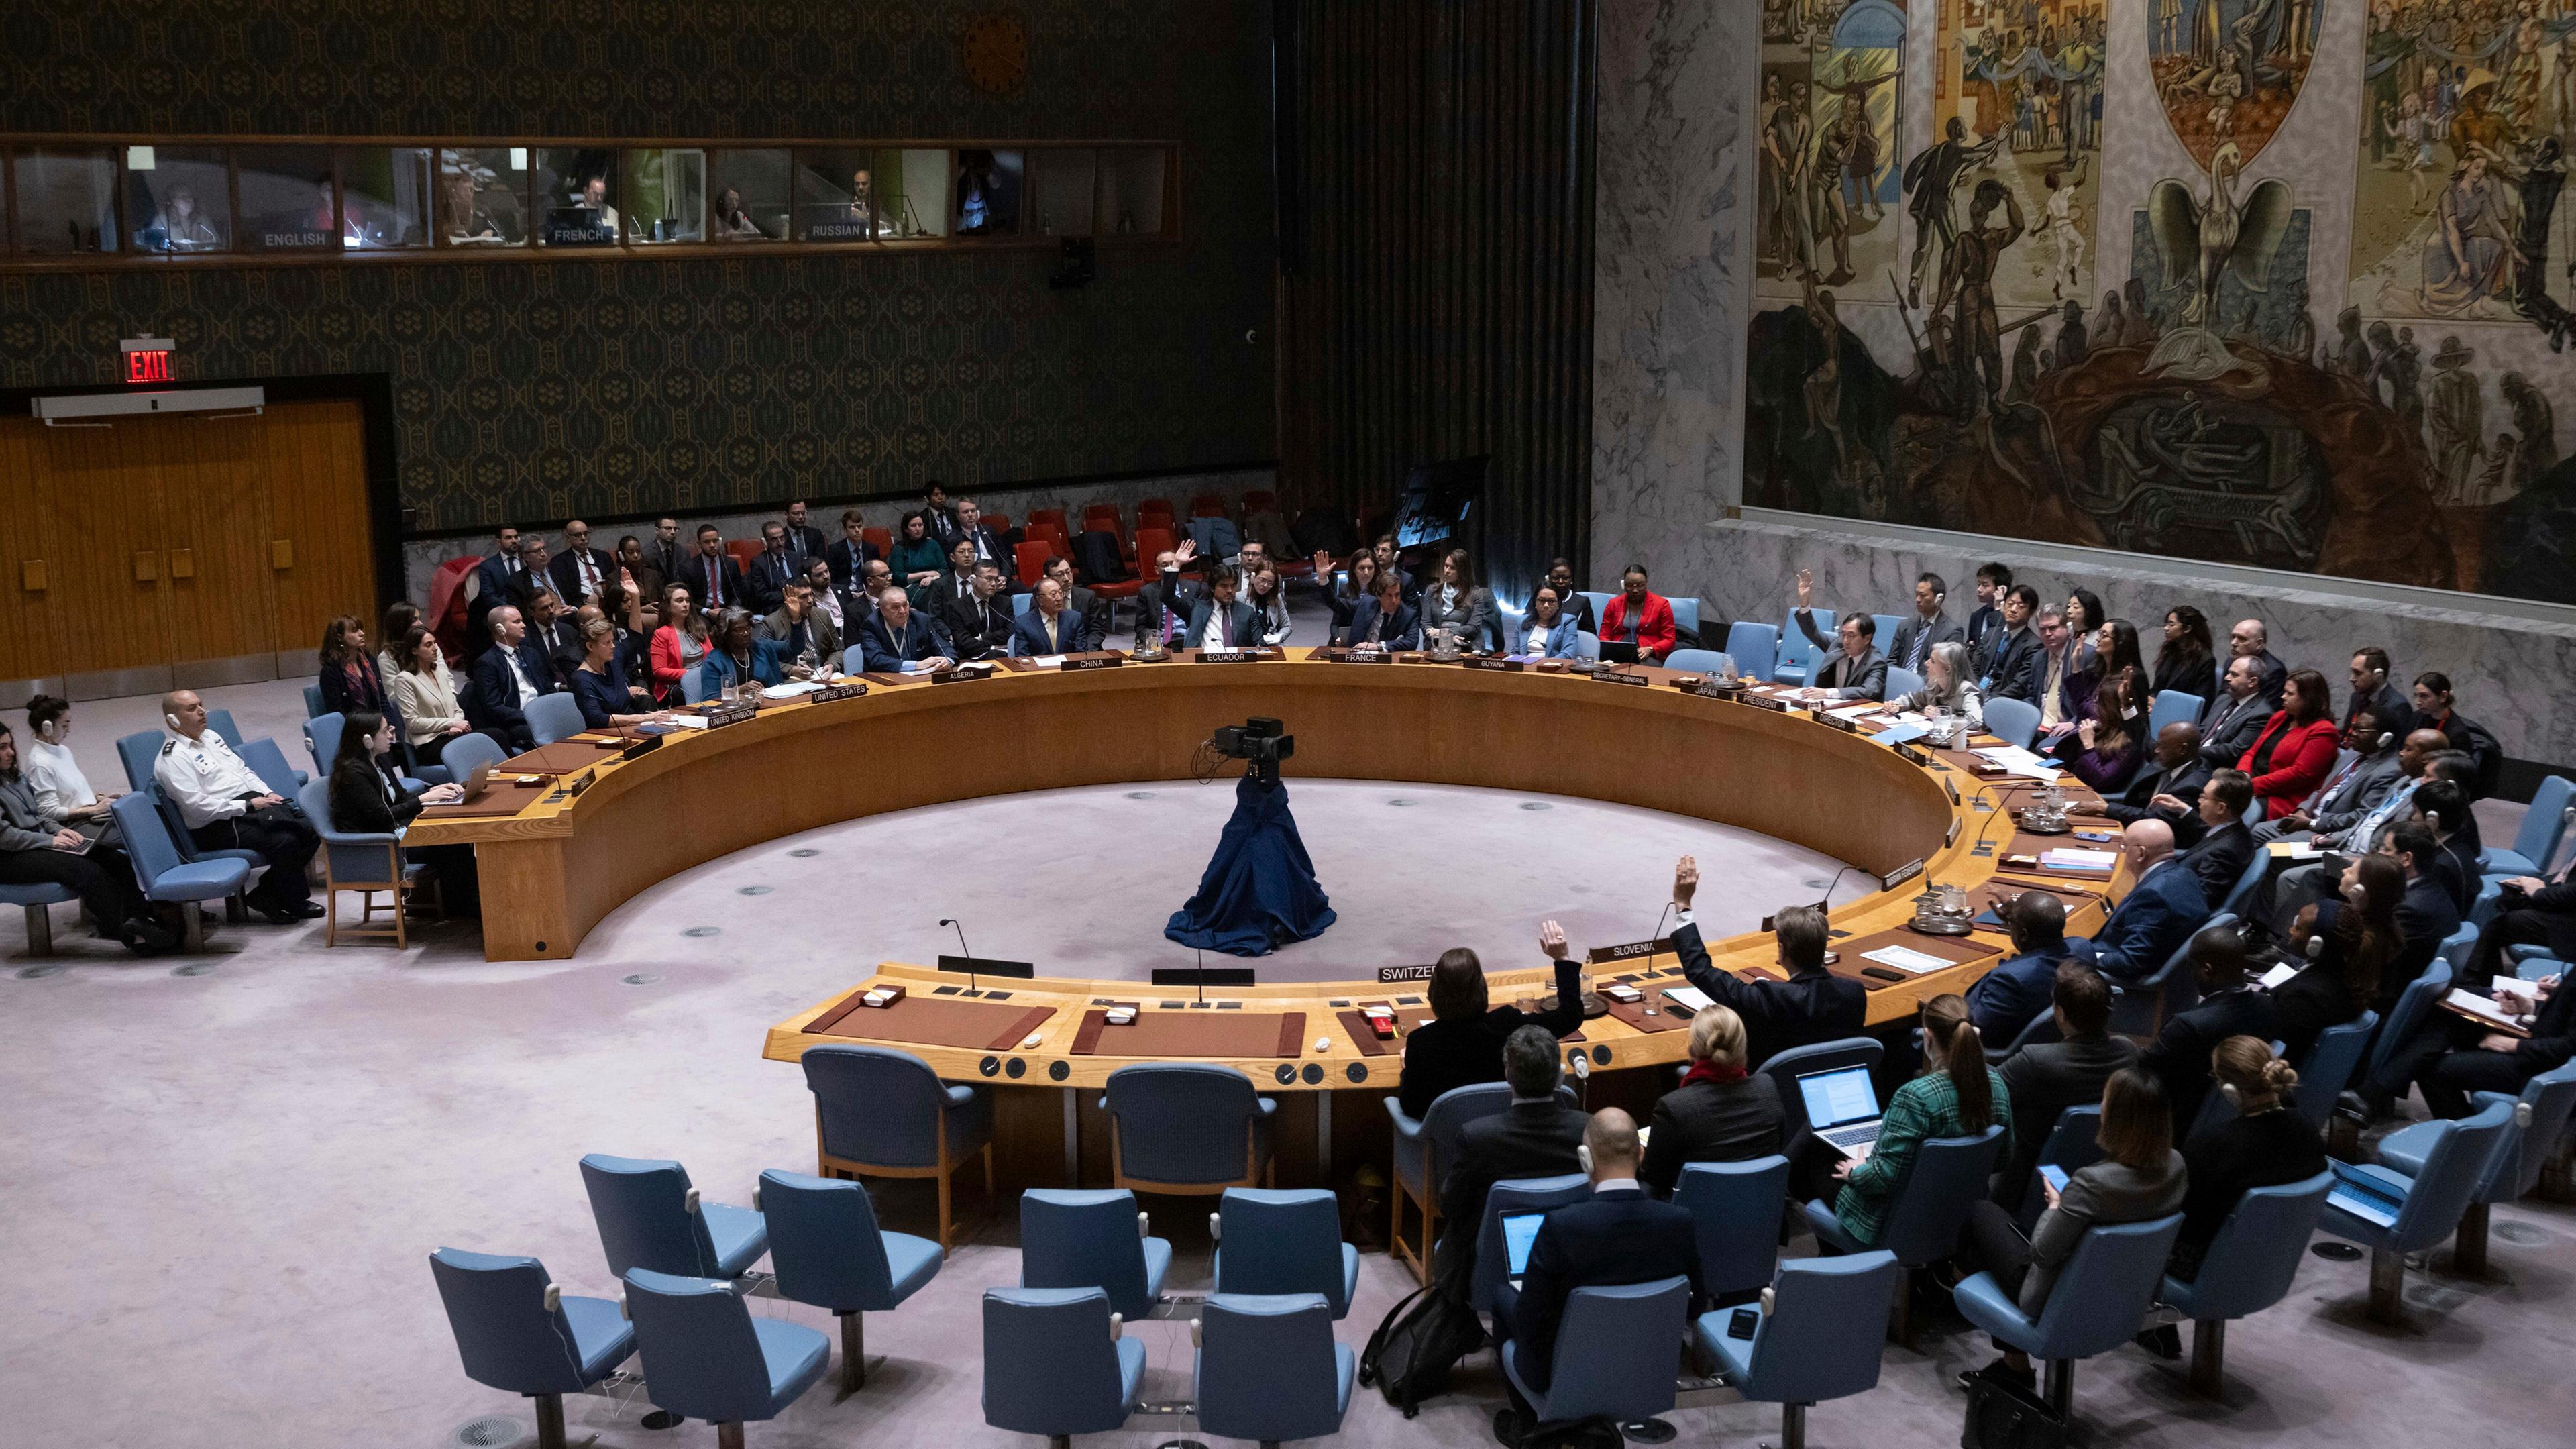  USA, New York: Vertreter der Mitgliedsländer stimmen während einer Sitzung des Sicherheitsrates im Hauptquartier der Vereinten Nationen ab.